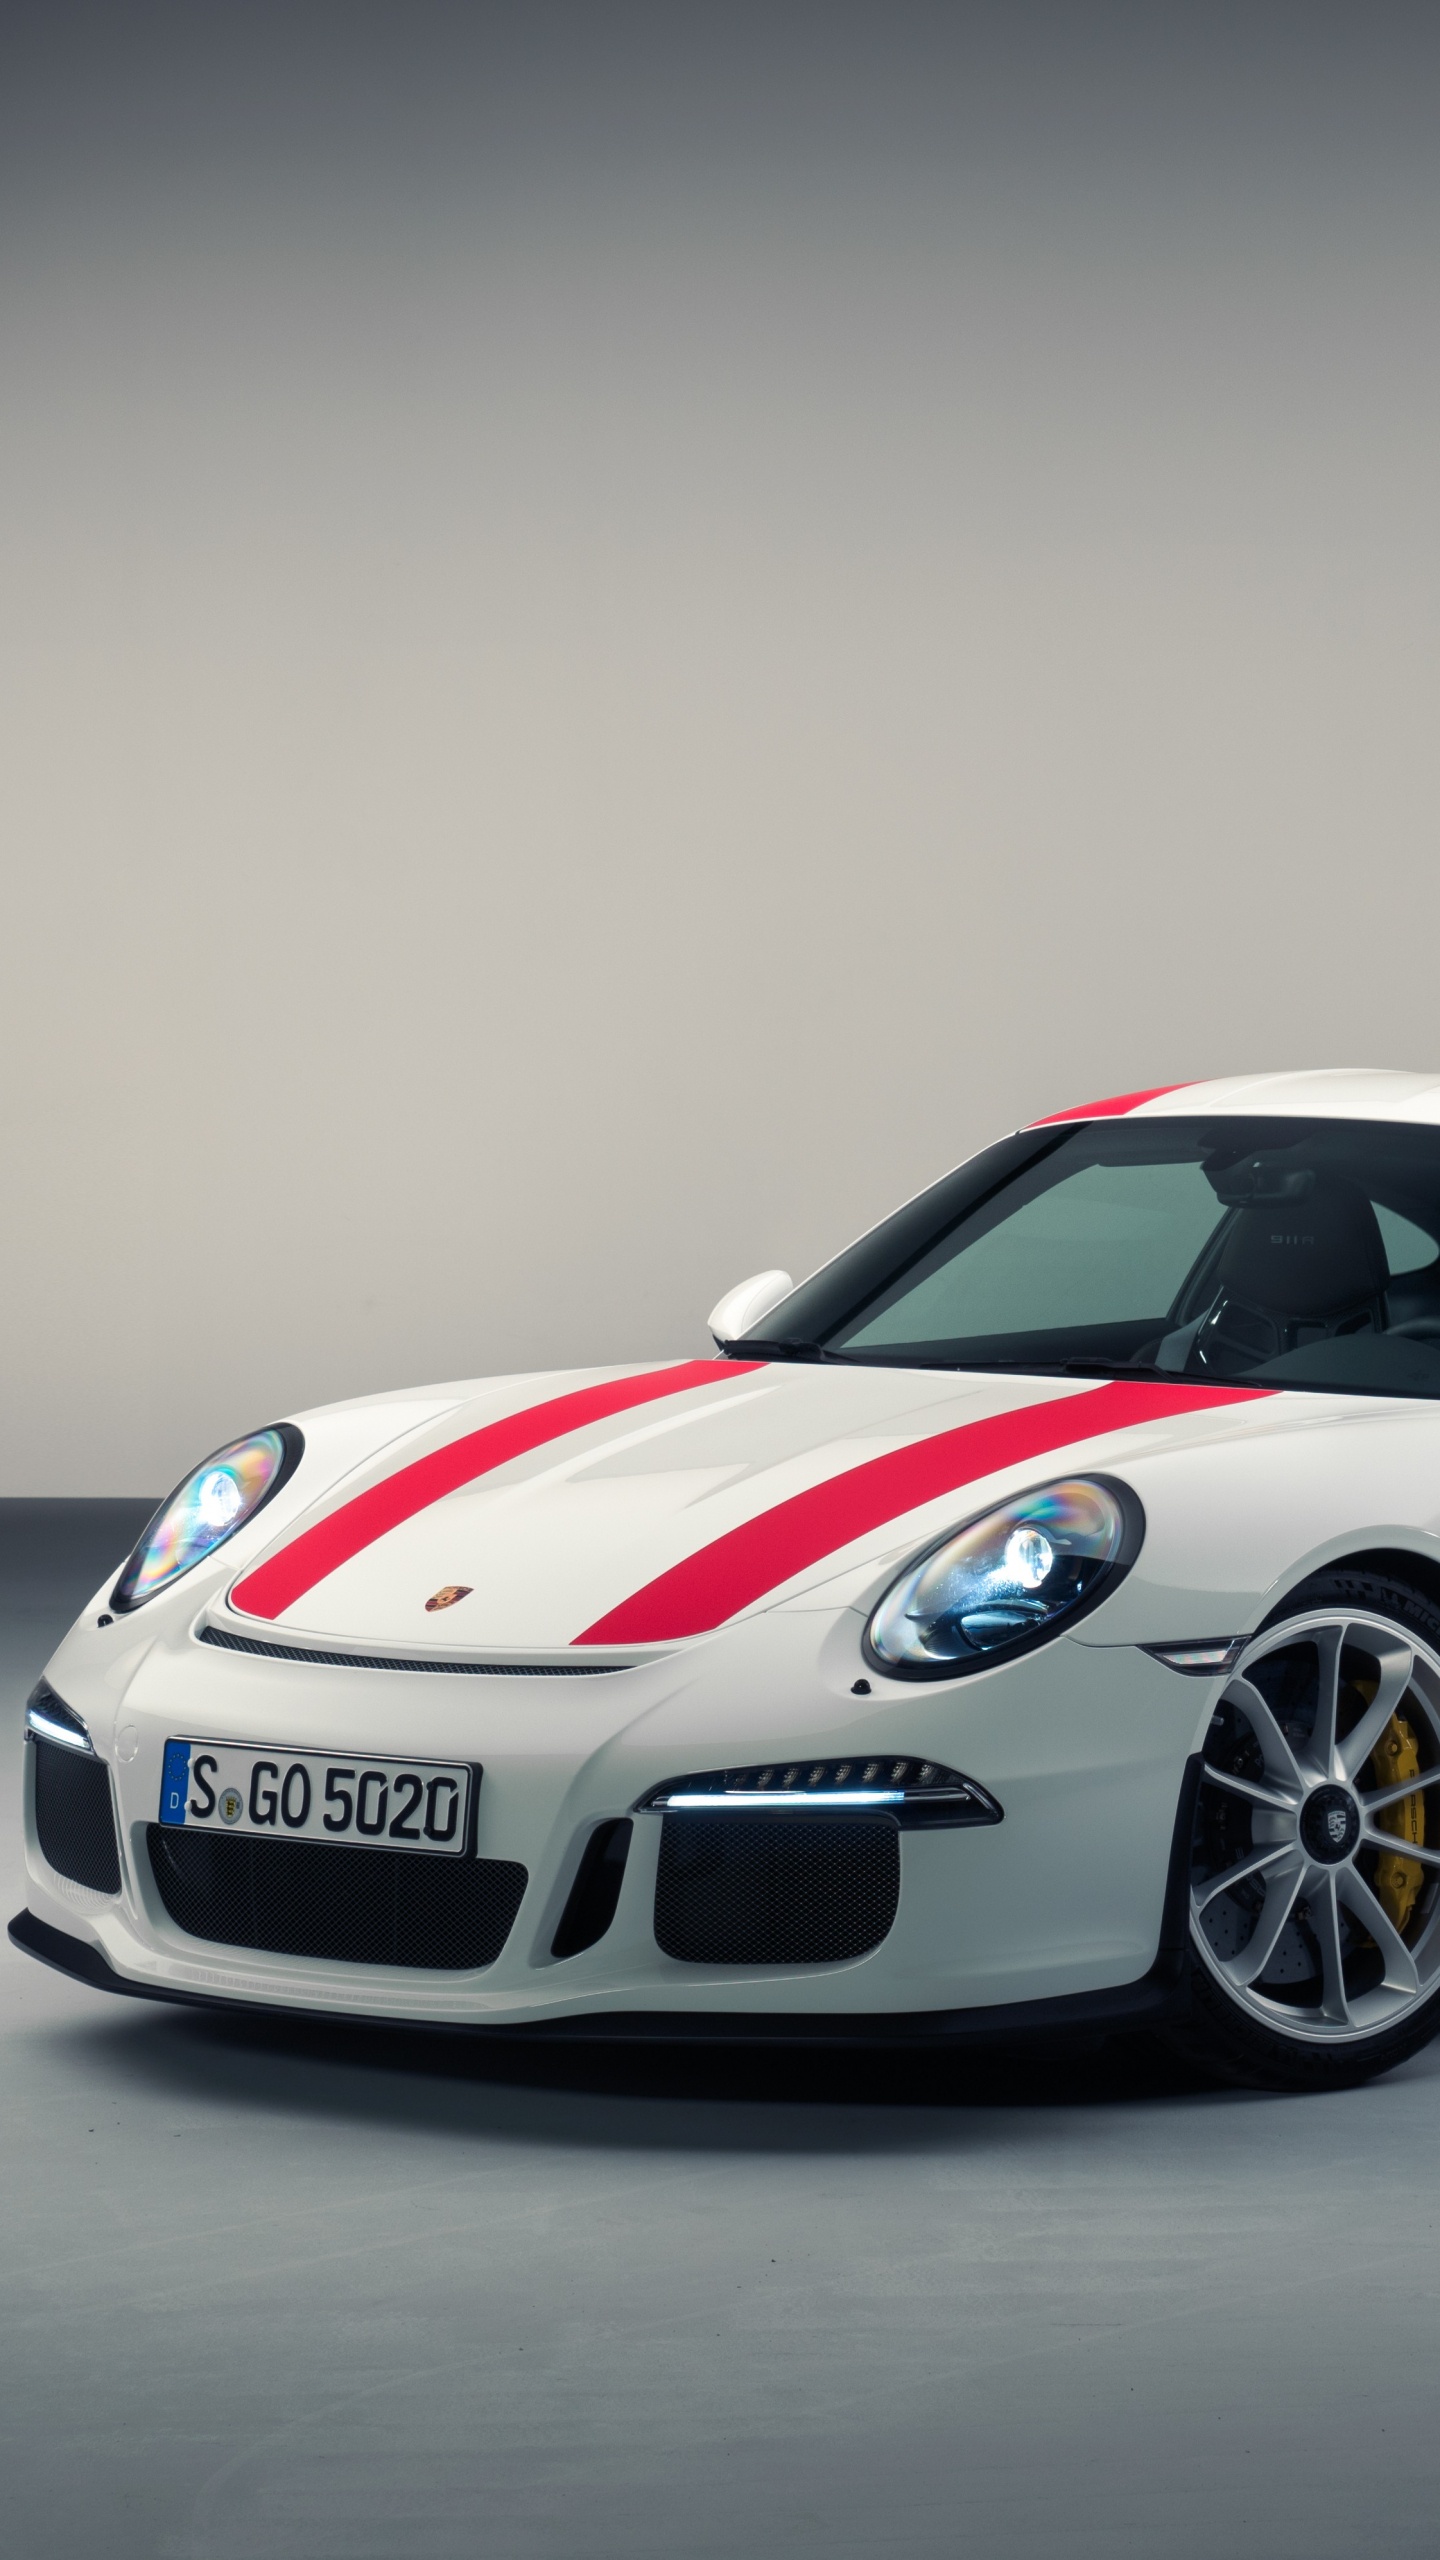 Porsche 911 Blanche et Rouge. Wallpaper in 1440x2560 Resolution